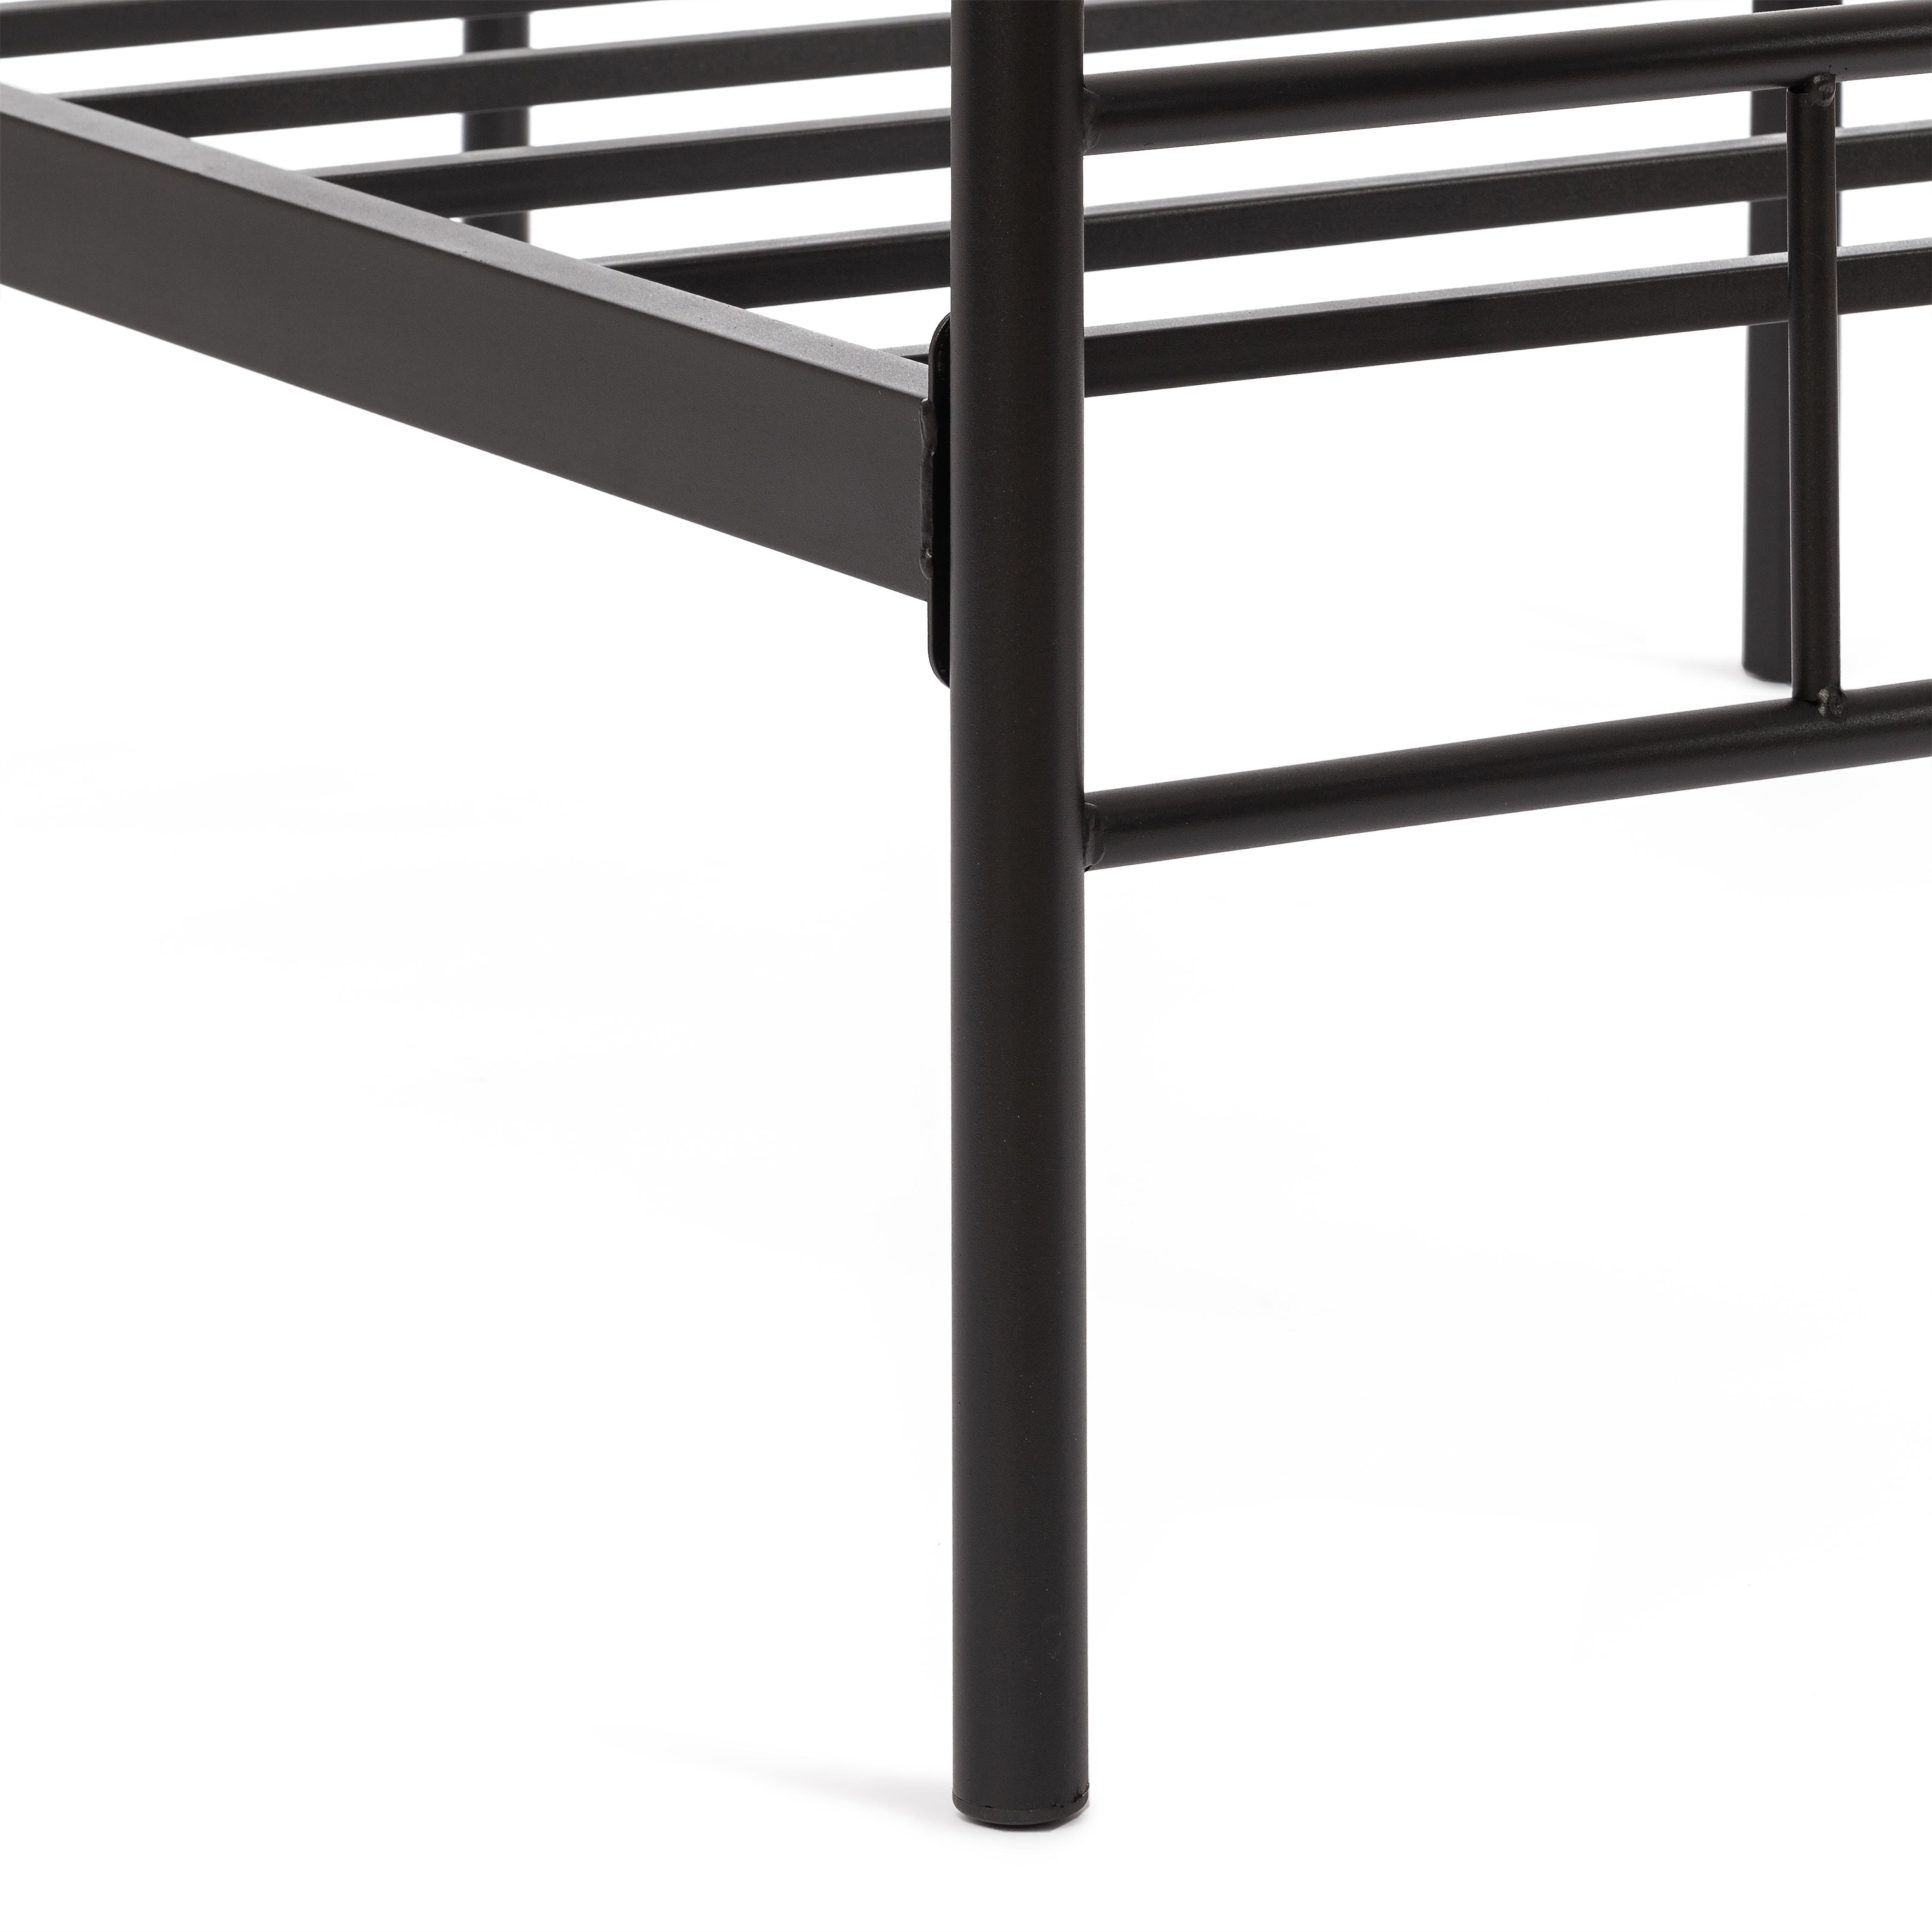 Кровать ROWENTA (mod. 9177) металл, 90*200 см (Single bed), Black (черный)